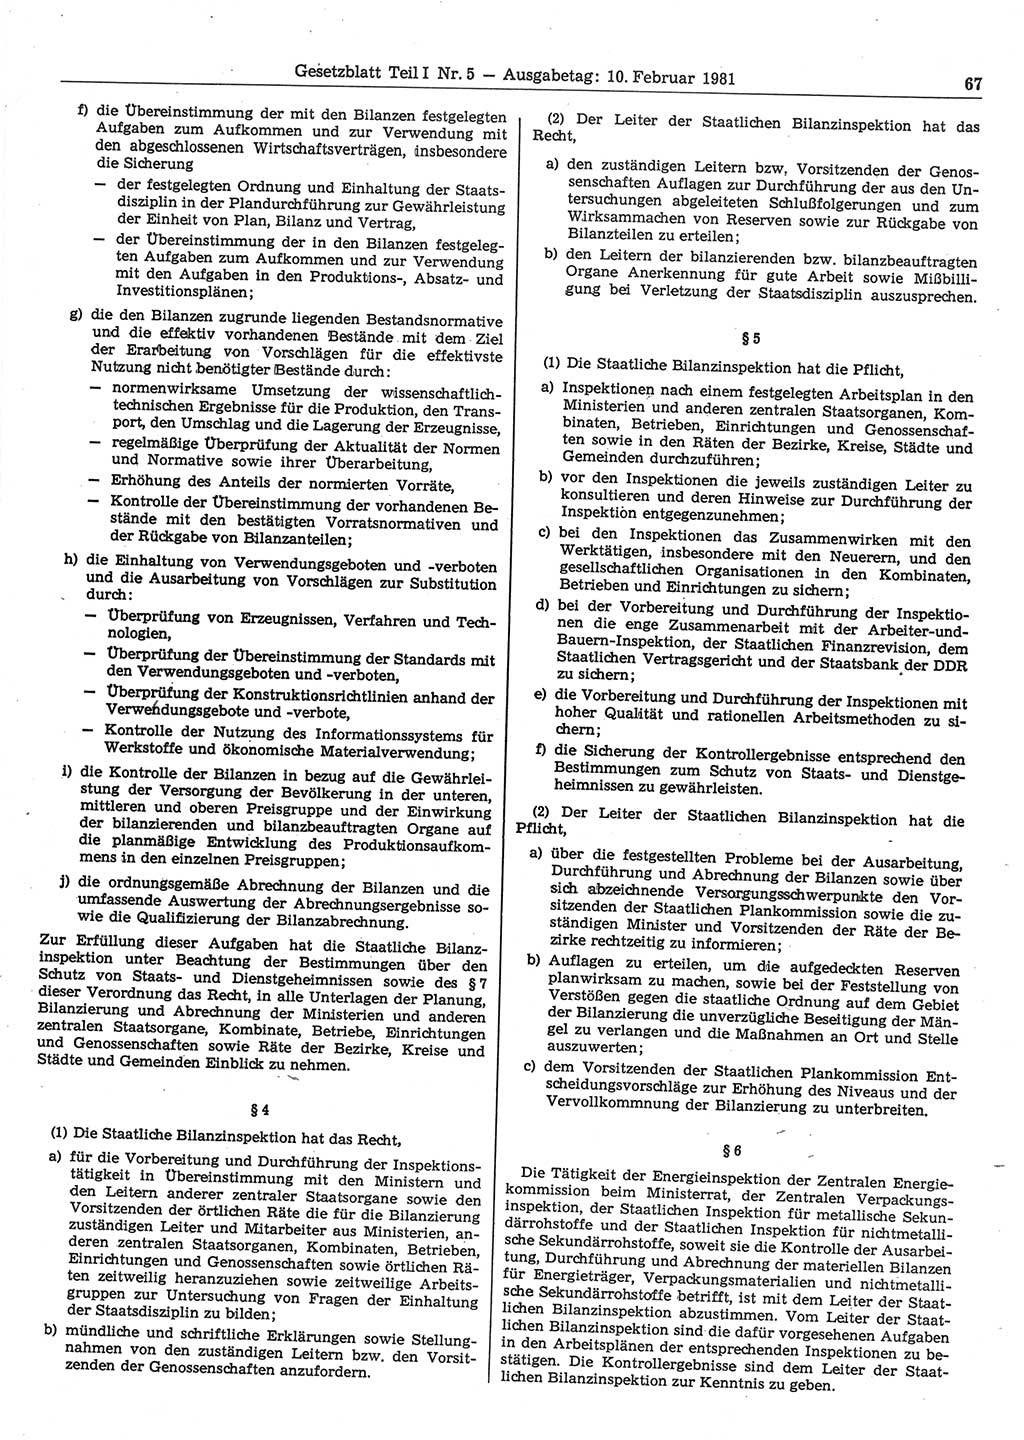 Gesetzblatt (GBl.) der Deutschen Demokratischen Republik (DDR) Teil Ⅰ 1981, Seite 67 (GBl. DDR Ⅰ 1981, S. 67)